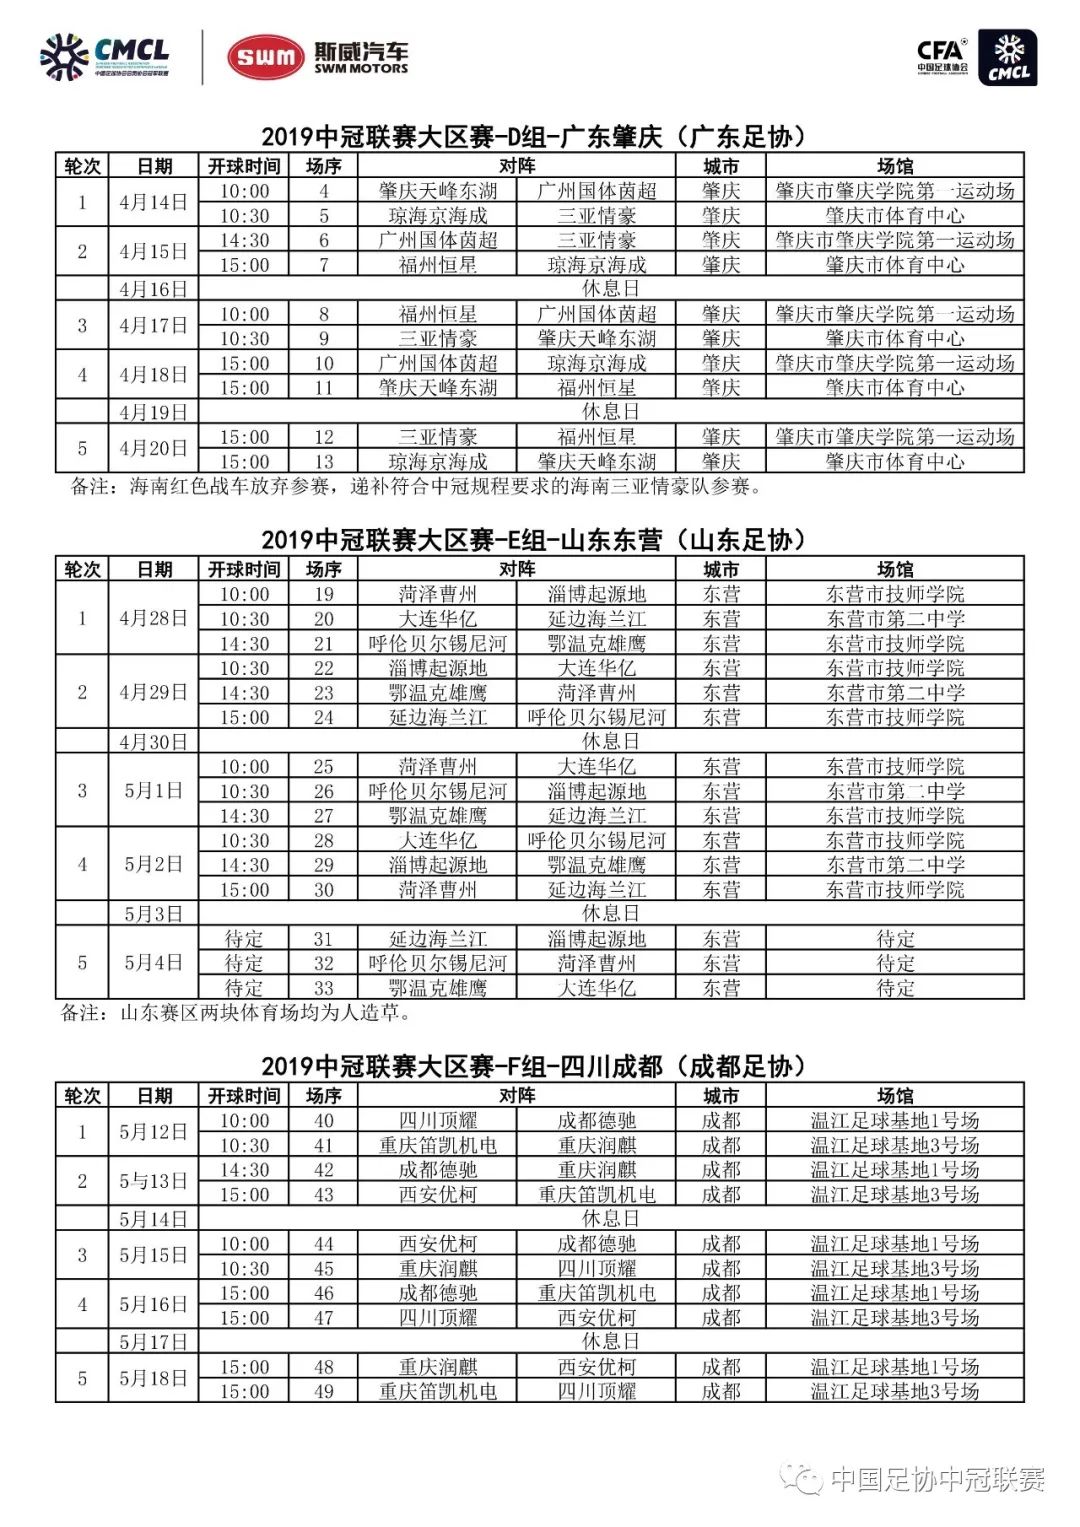 【赛事对阵】2019赛季中国足球协会会员协会